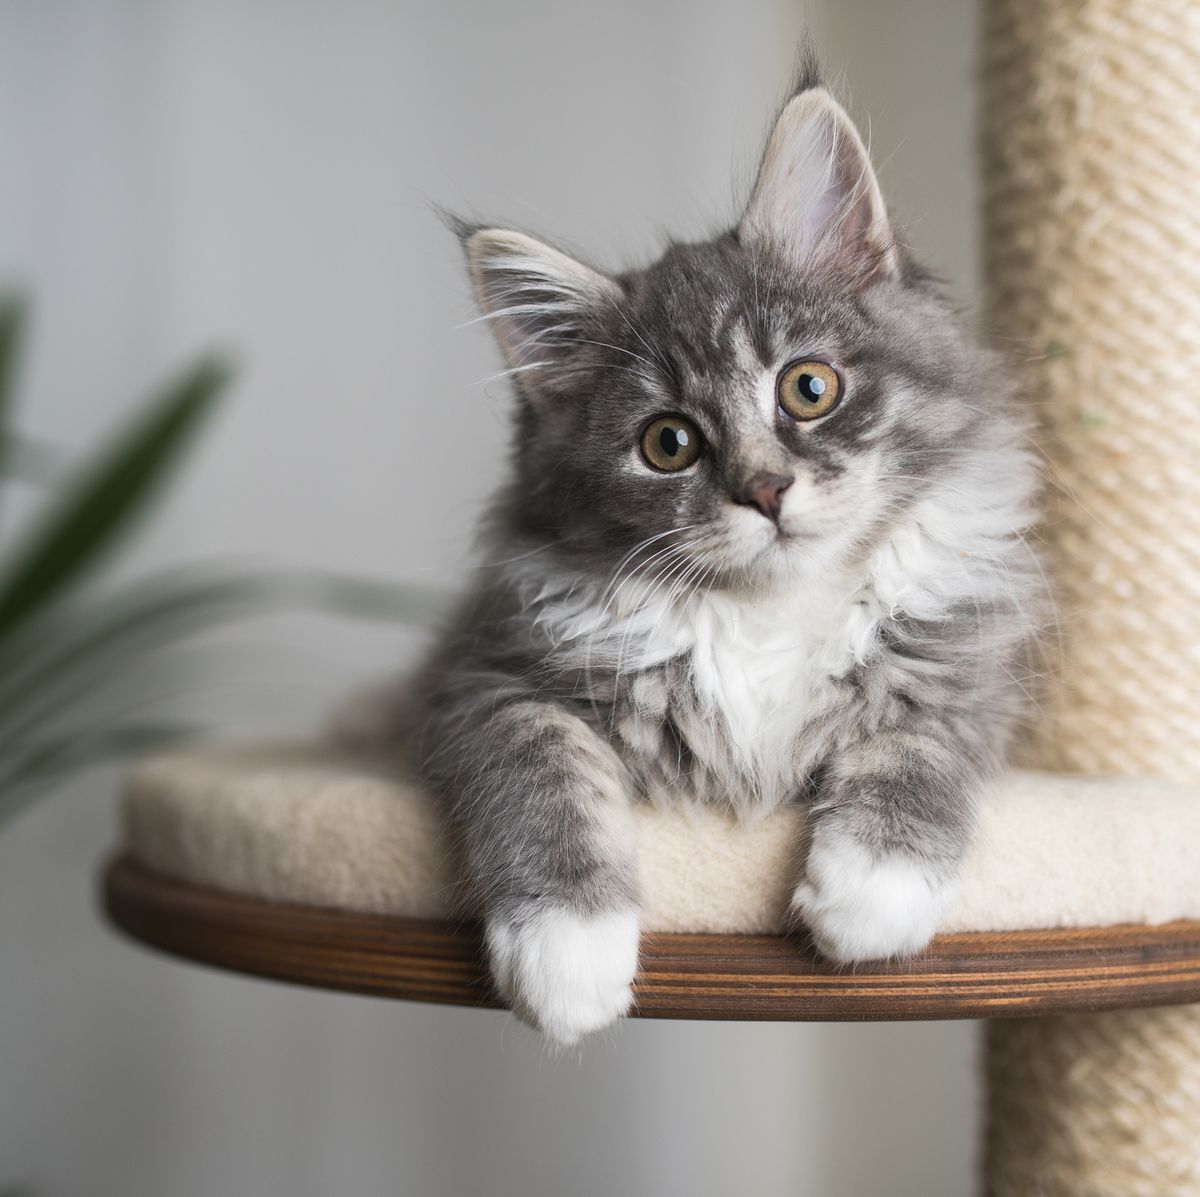 Comprar Poste rascador para gatos en forma de seta con cuerda de sisal  Natural, rascador de garra para gatos de interior